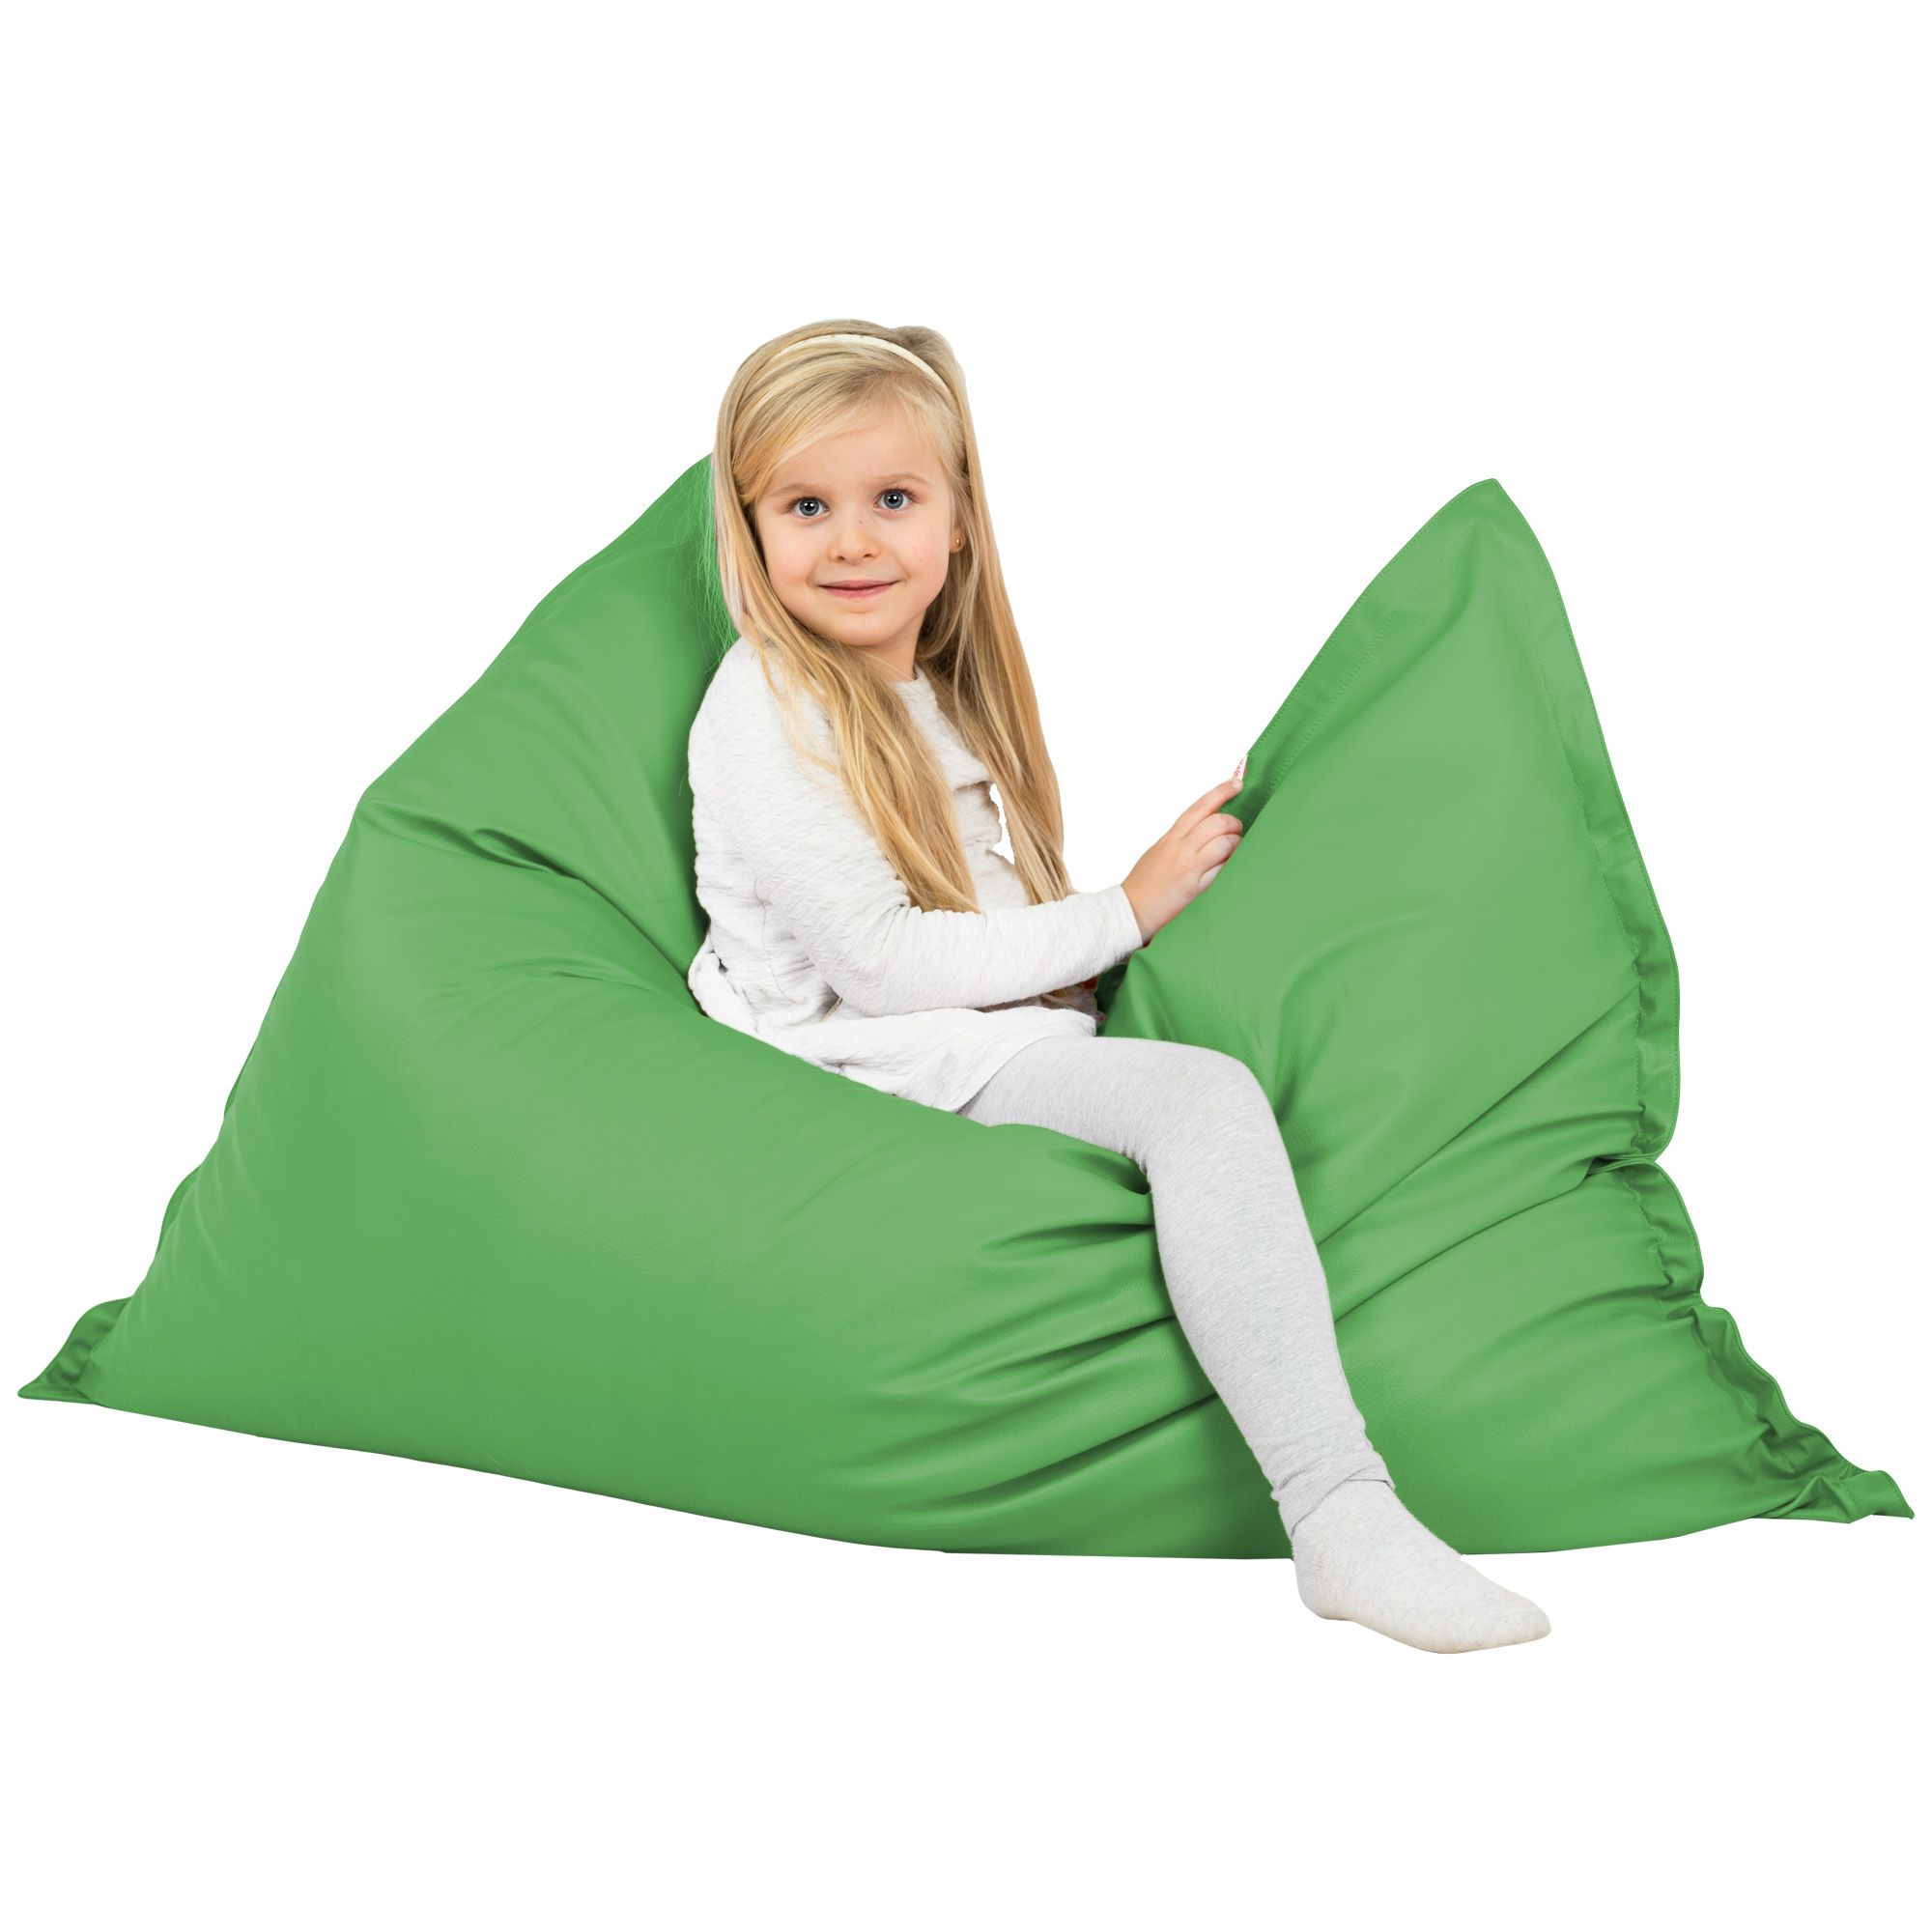 Cuscino gigante per bambini in ecopelle verde. Pouf rettangolare